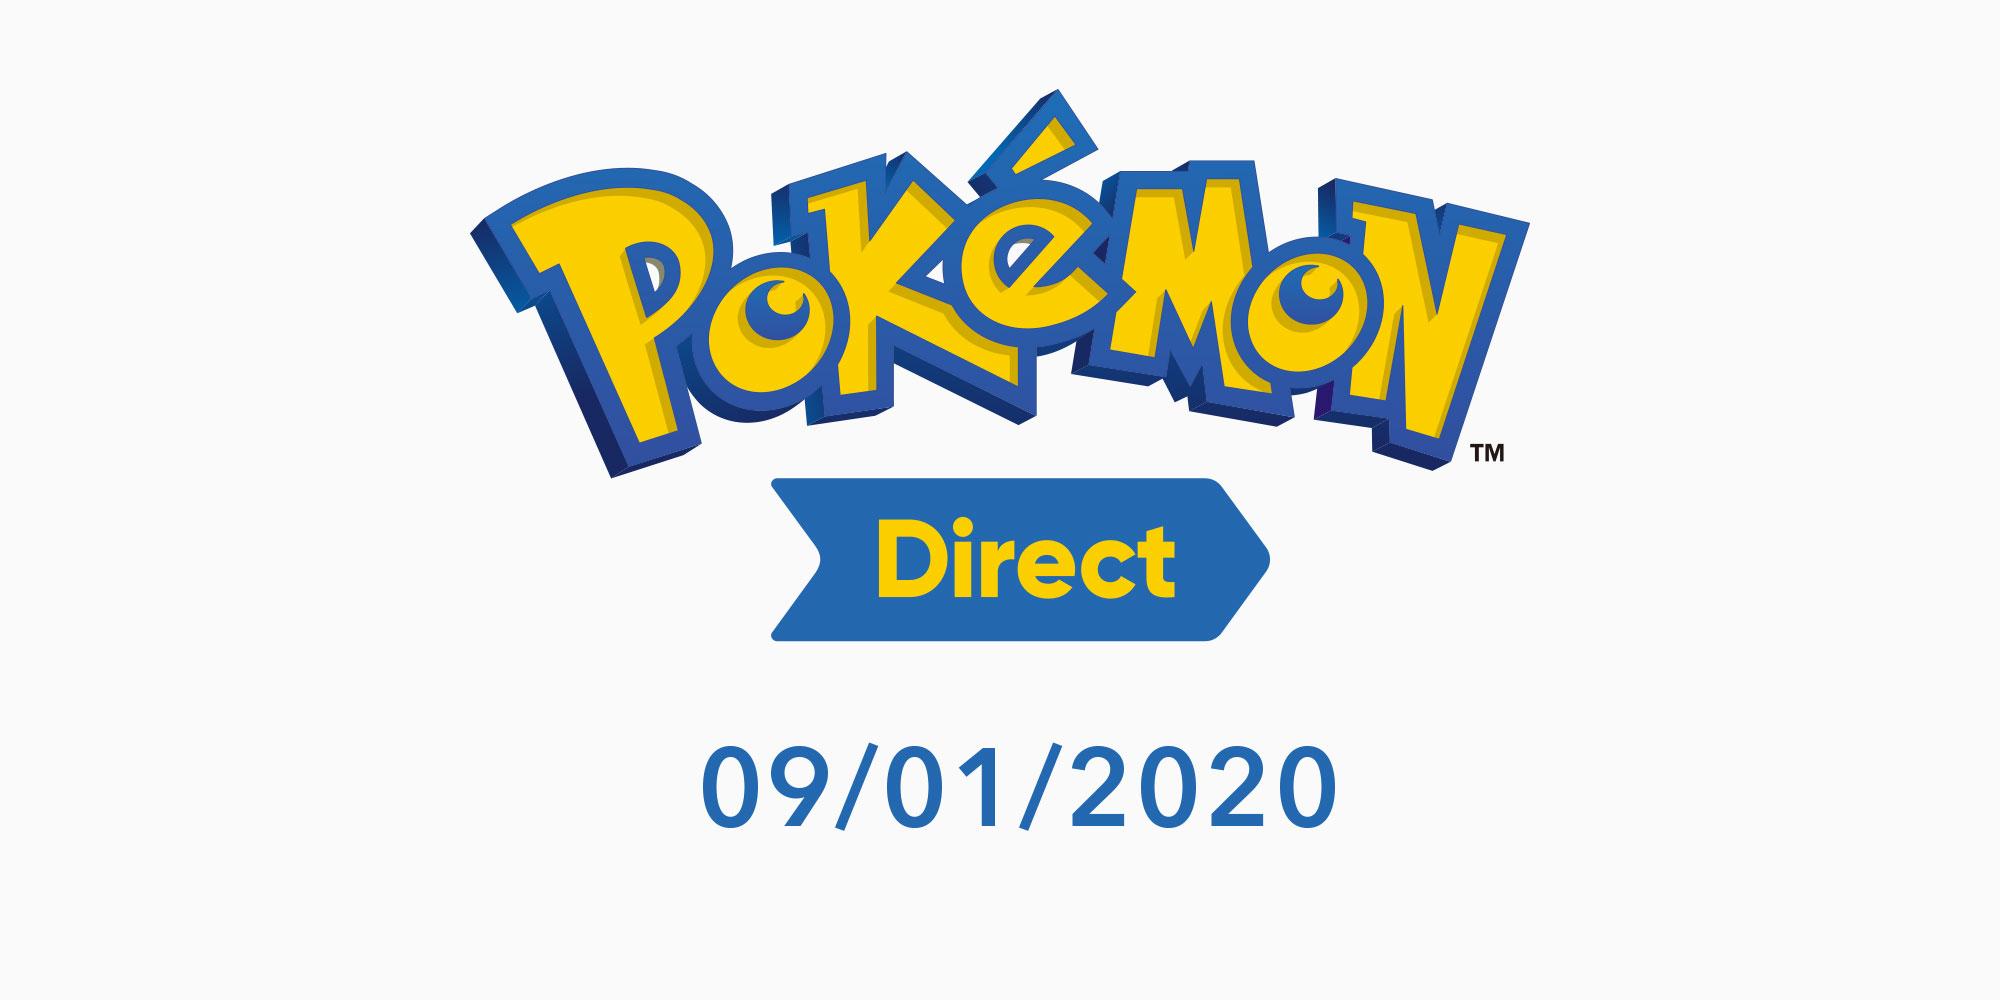 Il primo Nintendo Direct del 2020... è un Pokémon Direct